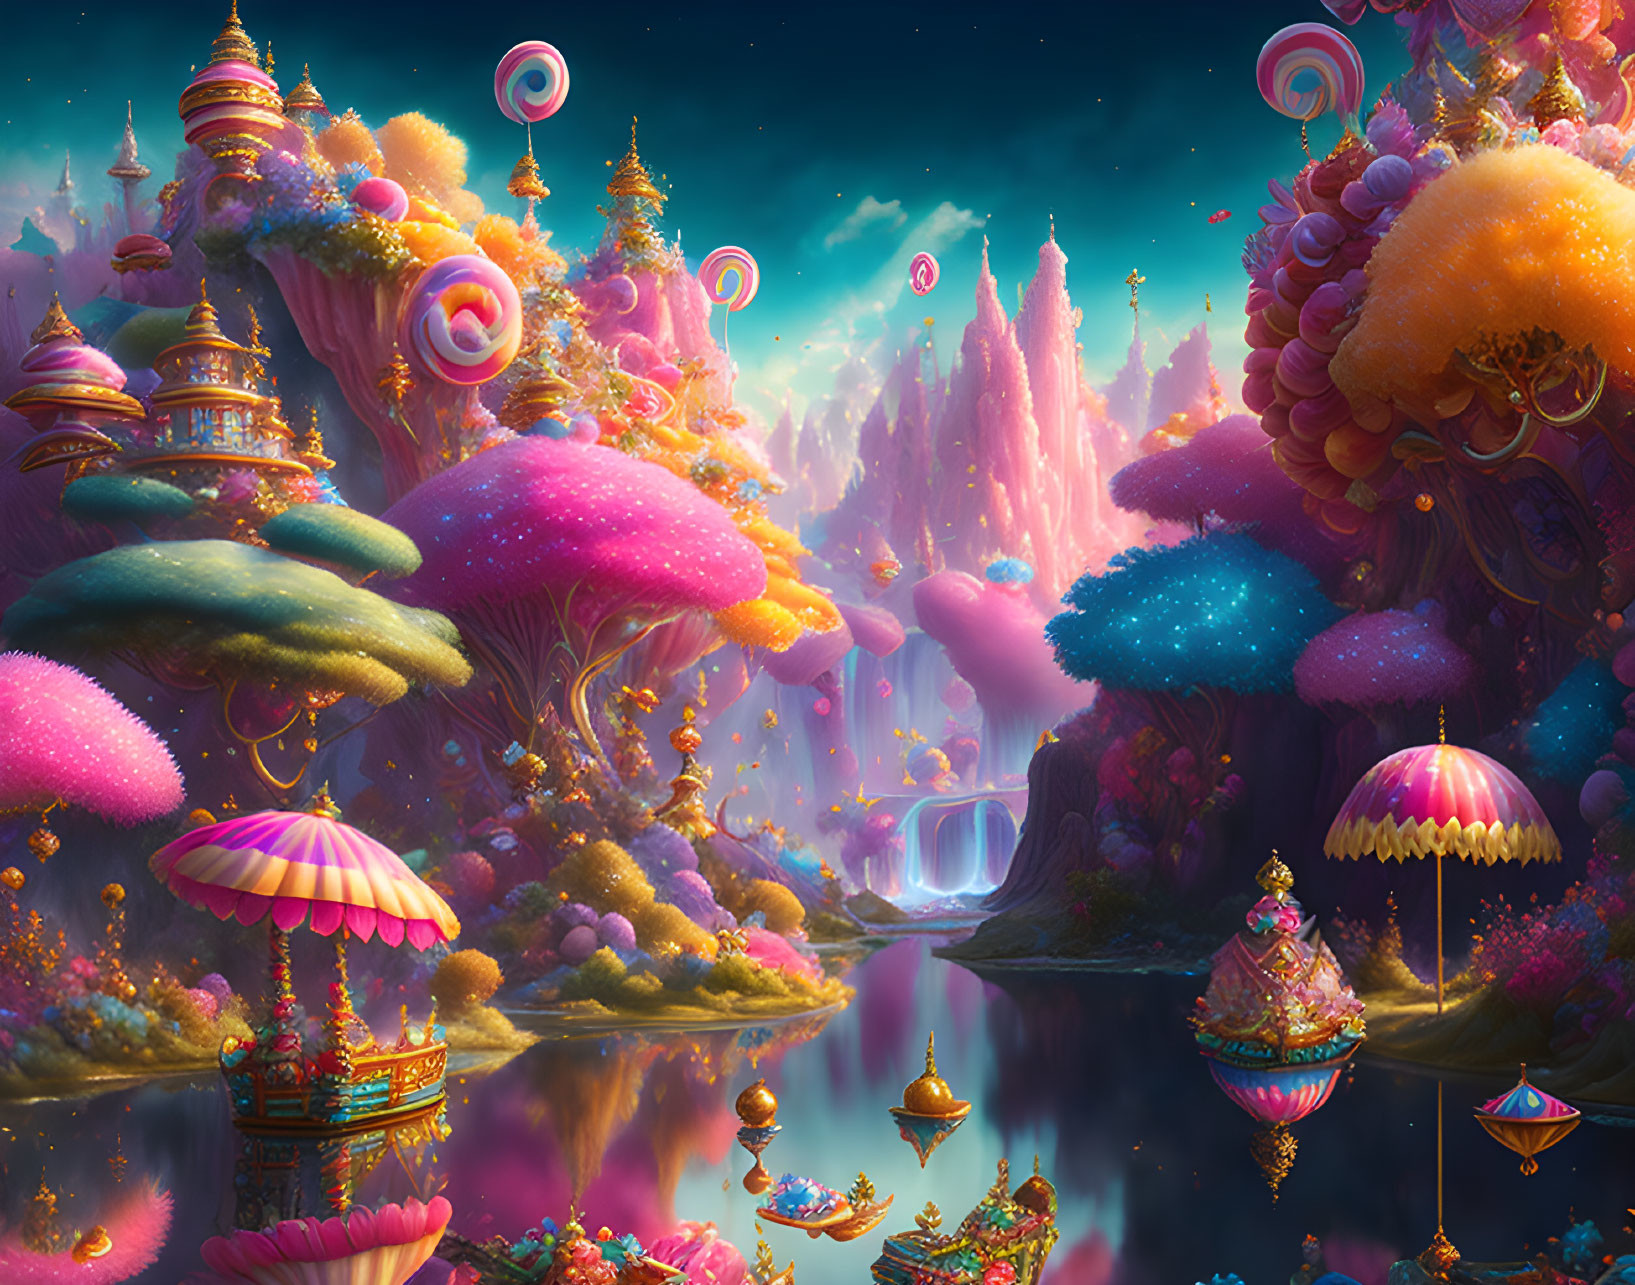 Candy Wonderland